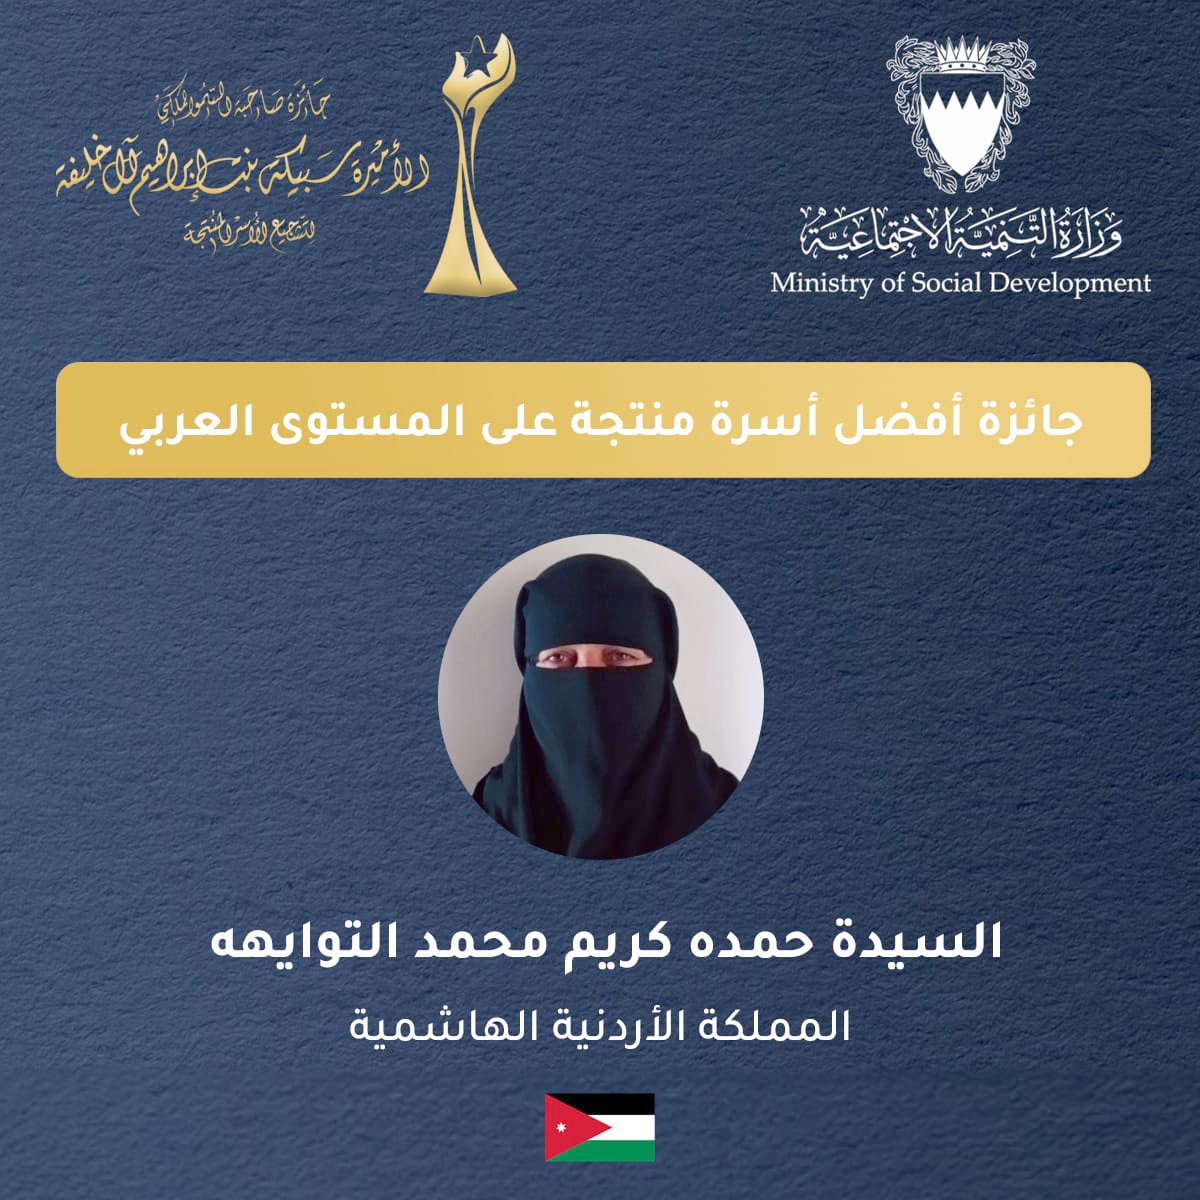 سيدة أردنية تفوز بالمركز الأول في جائزة لتشجيع الأسر المنتجة عربيًا #بترا 